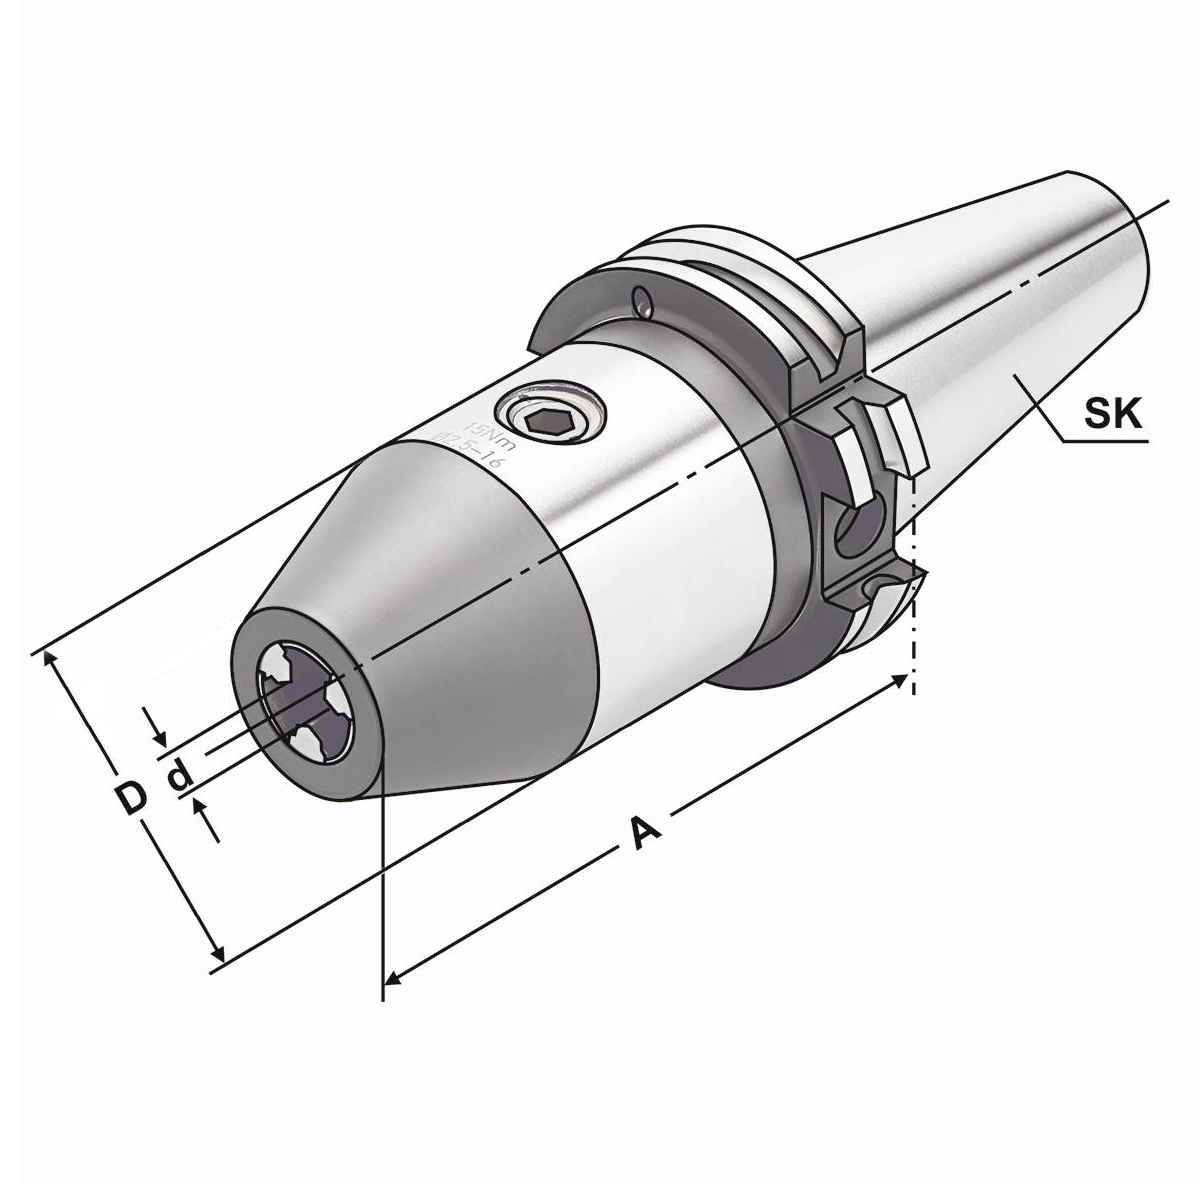 CNC-Bohrfutter SK 40-1/13-90 DIN 69871 AD